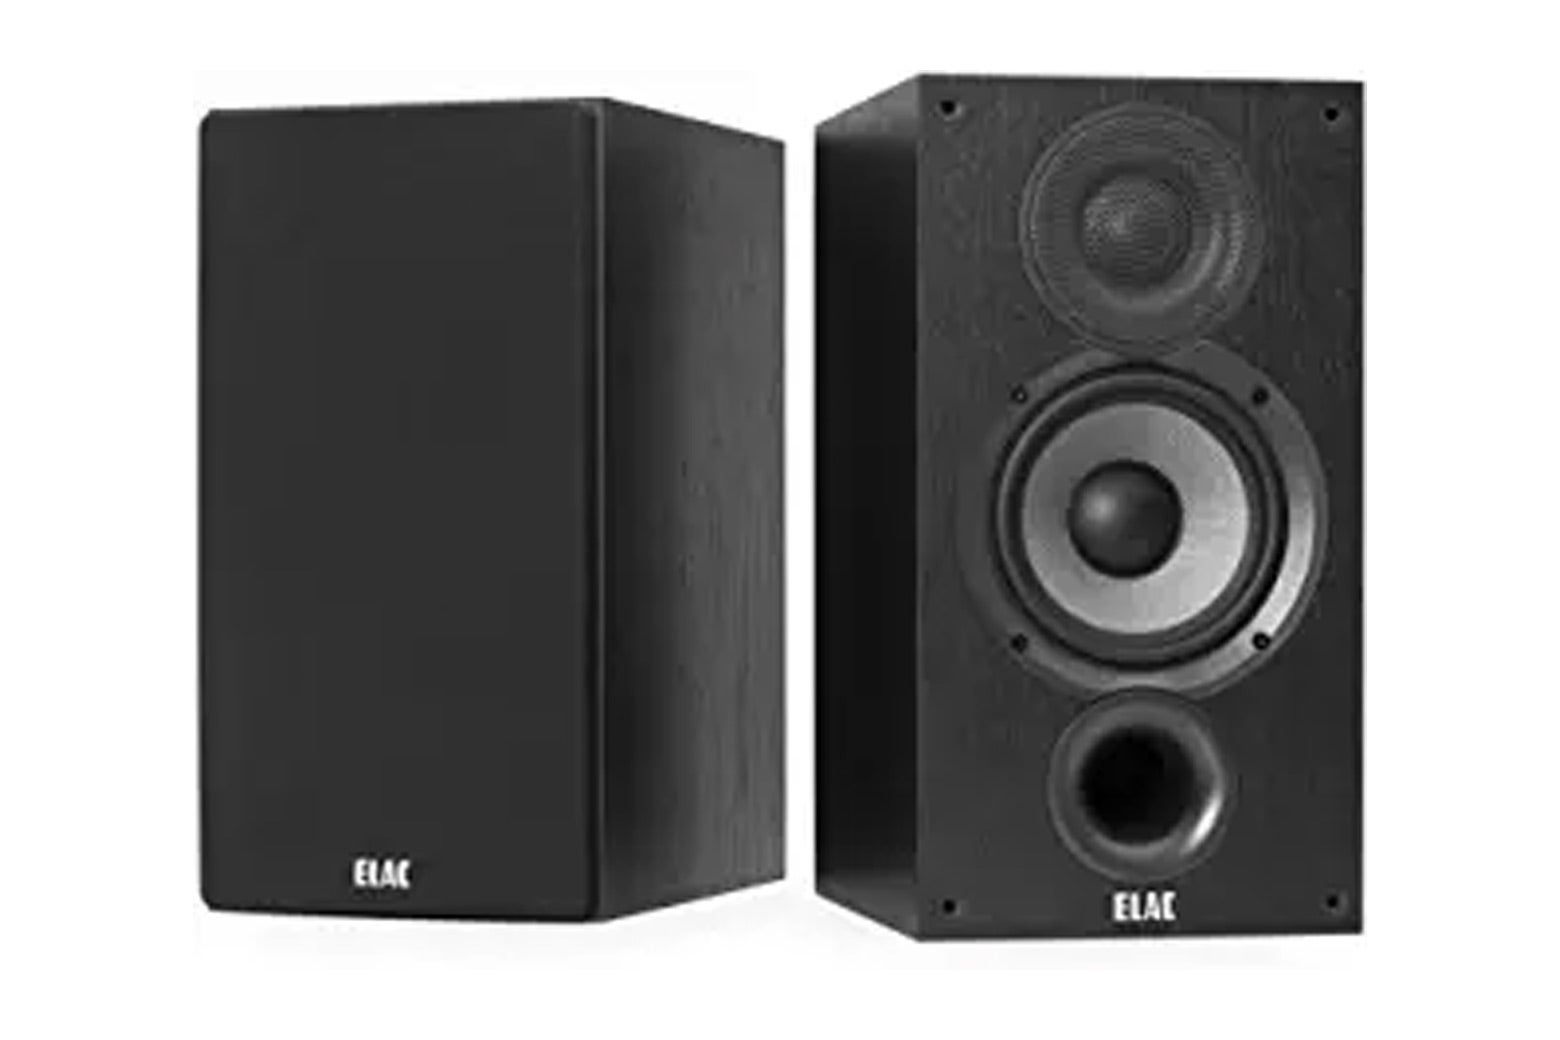 A pair of black speakers.